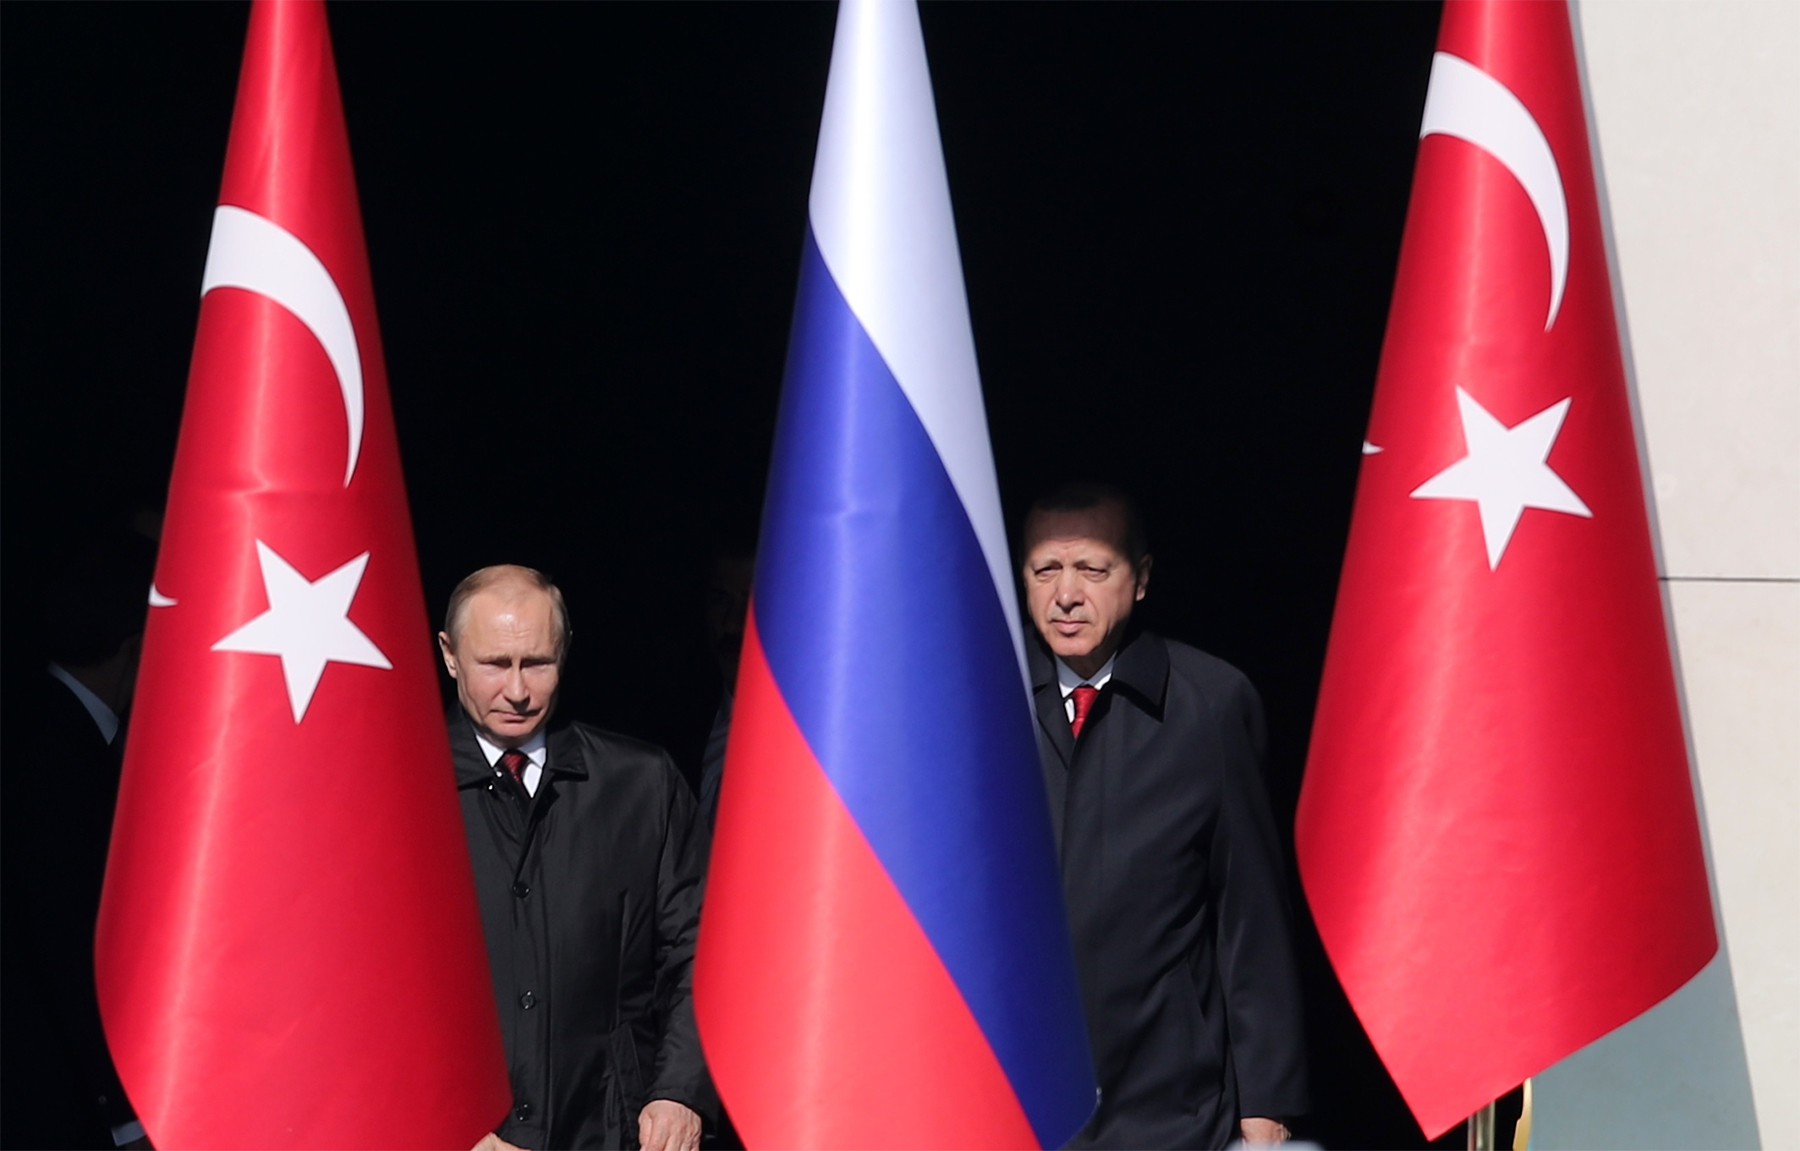  Փորձագետ. Իդլիբի էսկալացիան ի ցույց դրեց ՌԴ-Թուրքիա գործընկերության փխրունությունը